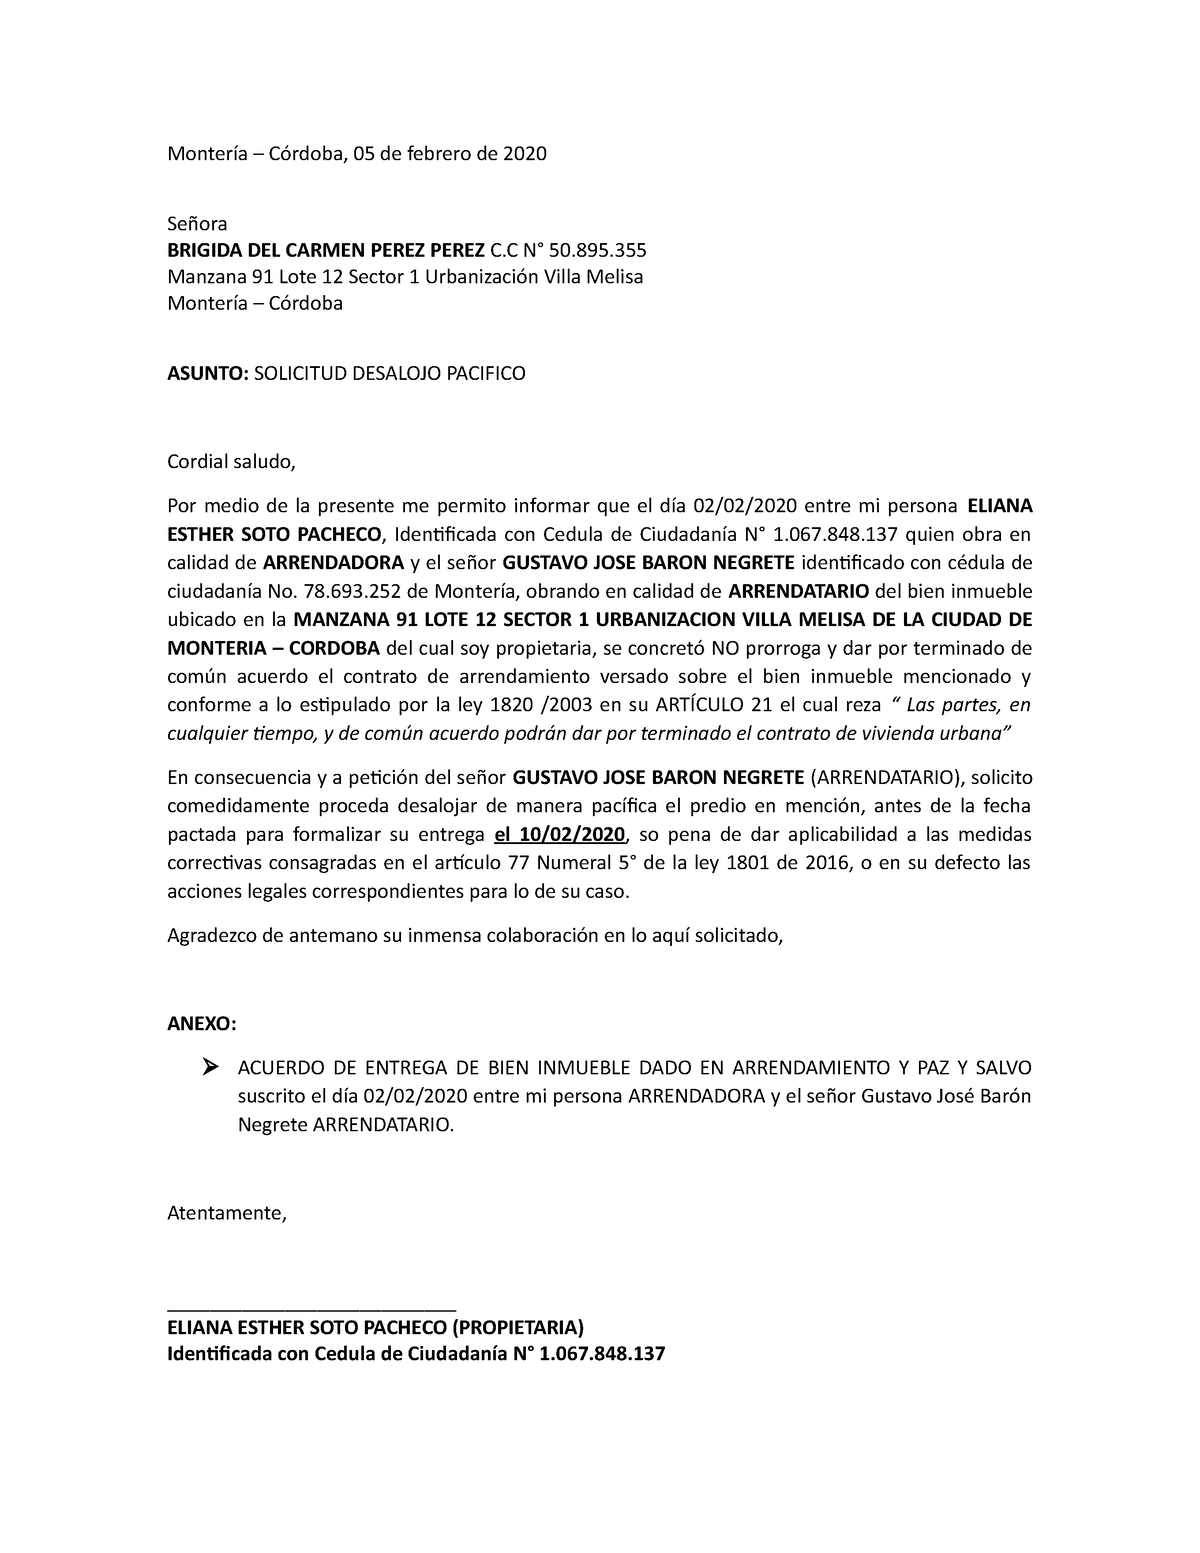 Carta Solicitud Desalojo - Montería – Córdoba, 05 de febrero de 2020 Señora  BRIGIDA DEL CARMEN PEREZ - Studocu